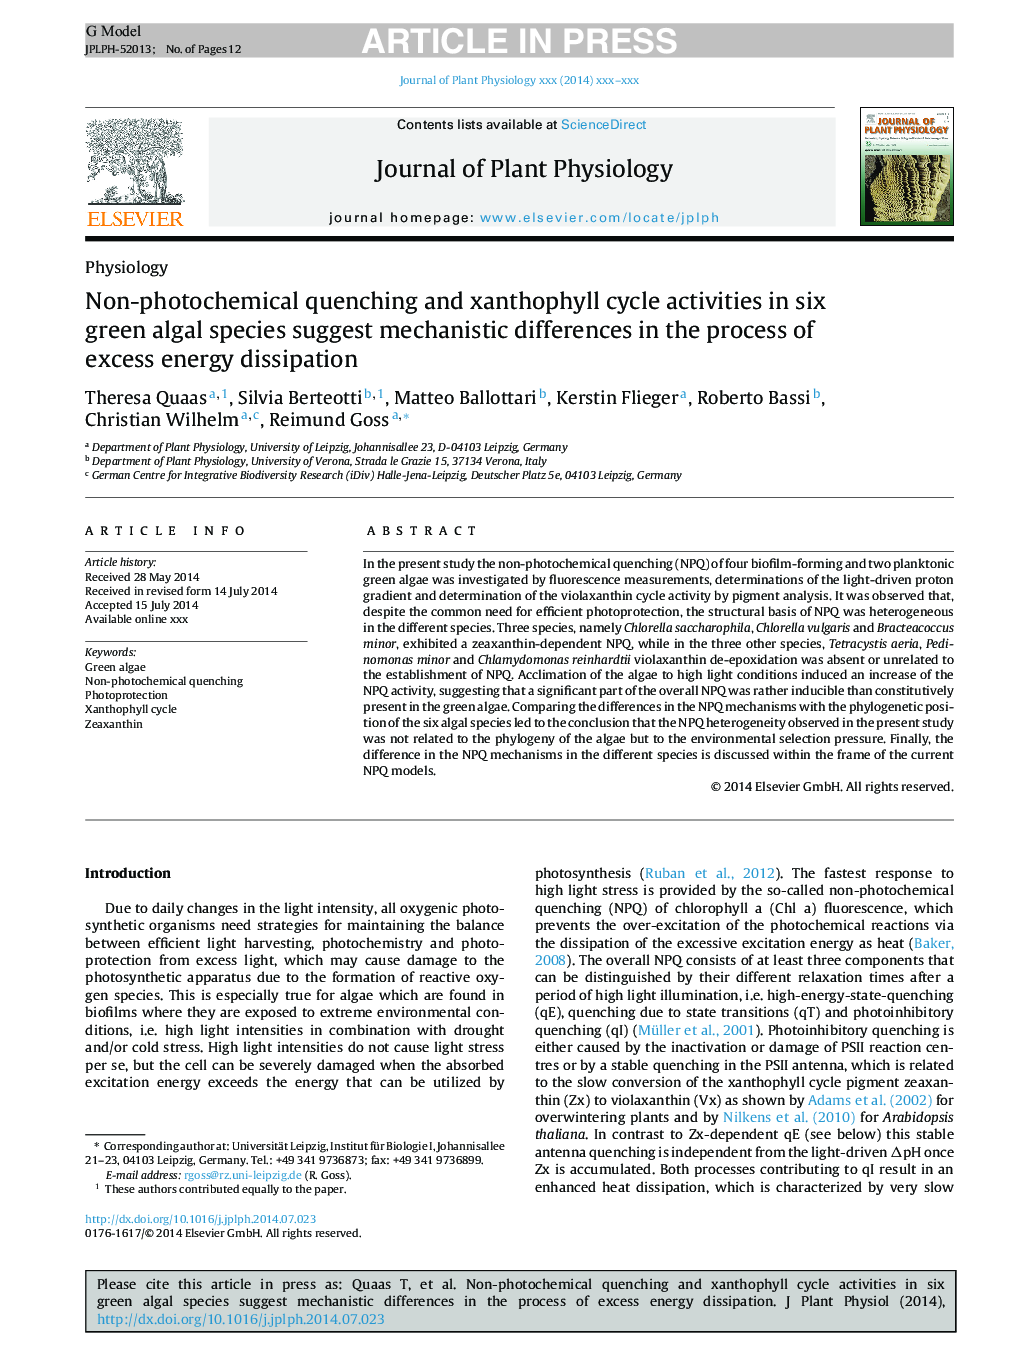 فعالیت های چرخه غیر فتوشیمیایی و خنثی فایلی در شش گونه جلبک سبز، تفاوت های مکانیکی در فرایند انحلال انرژی بیش از حد را نشان می دهد 